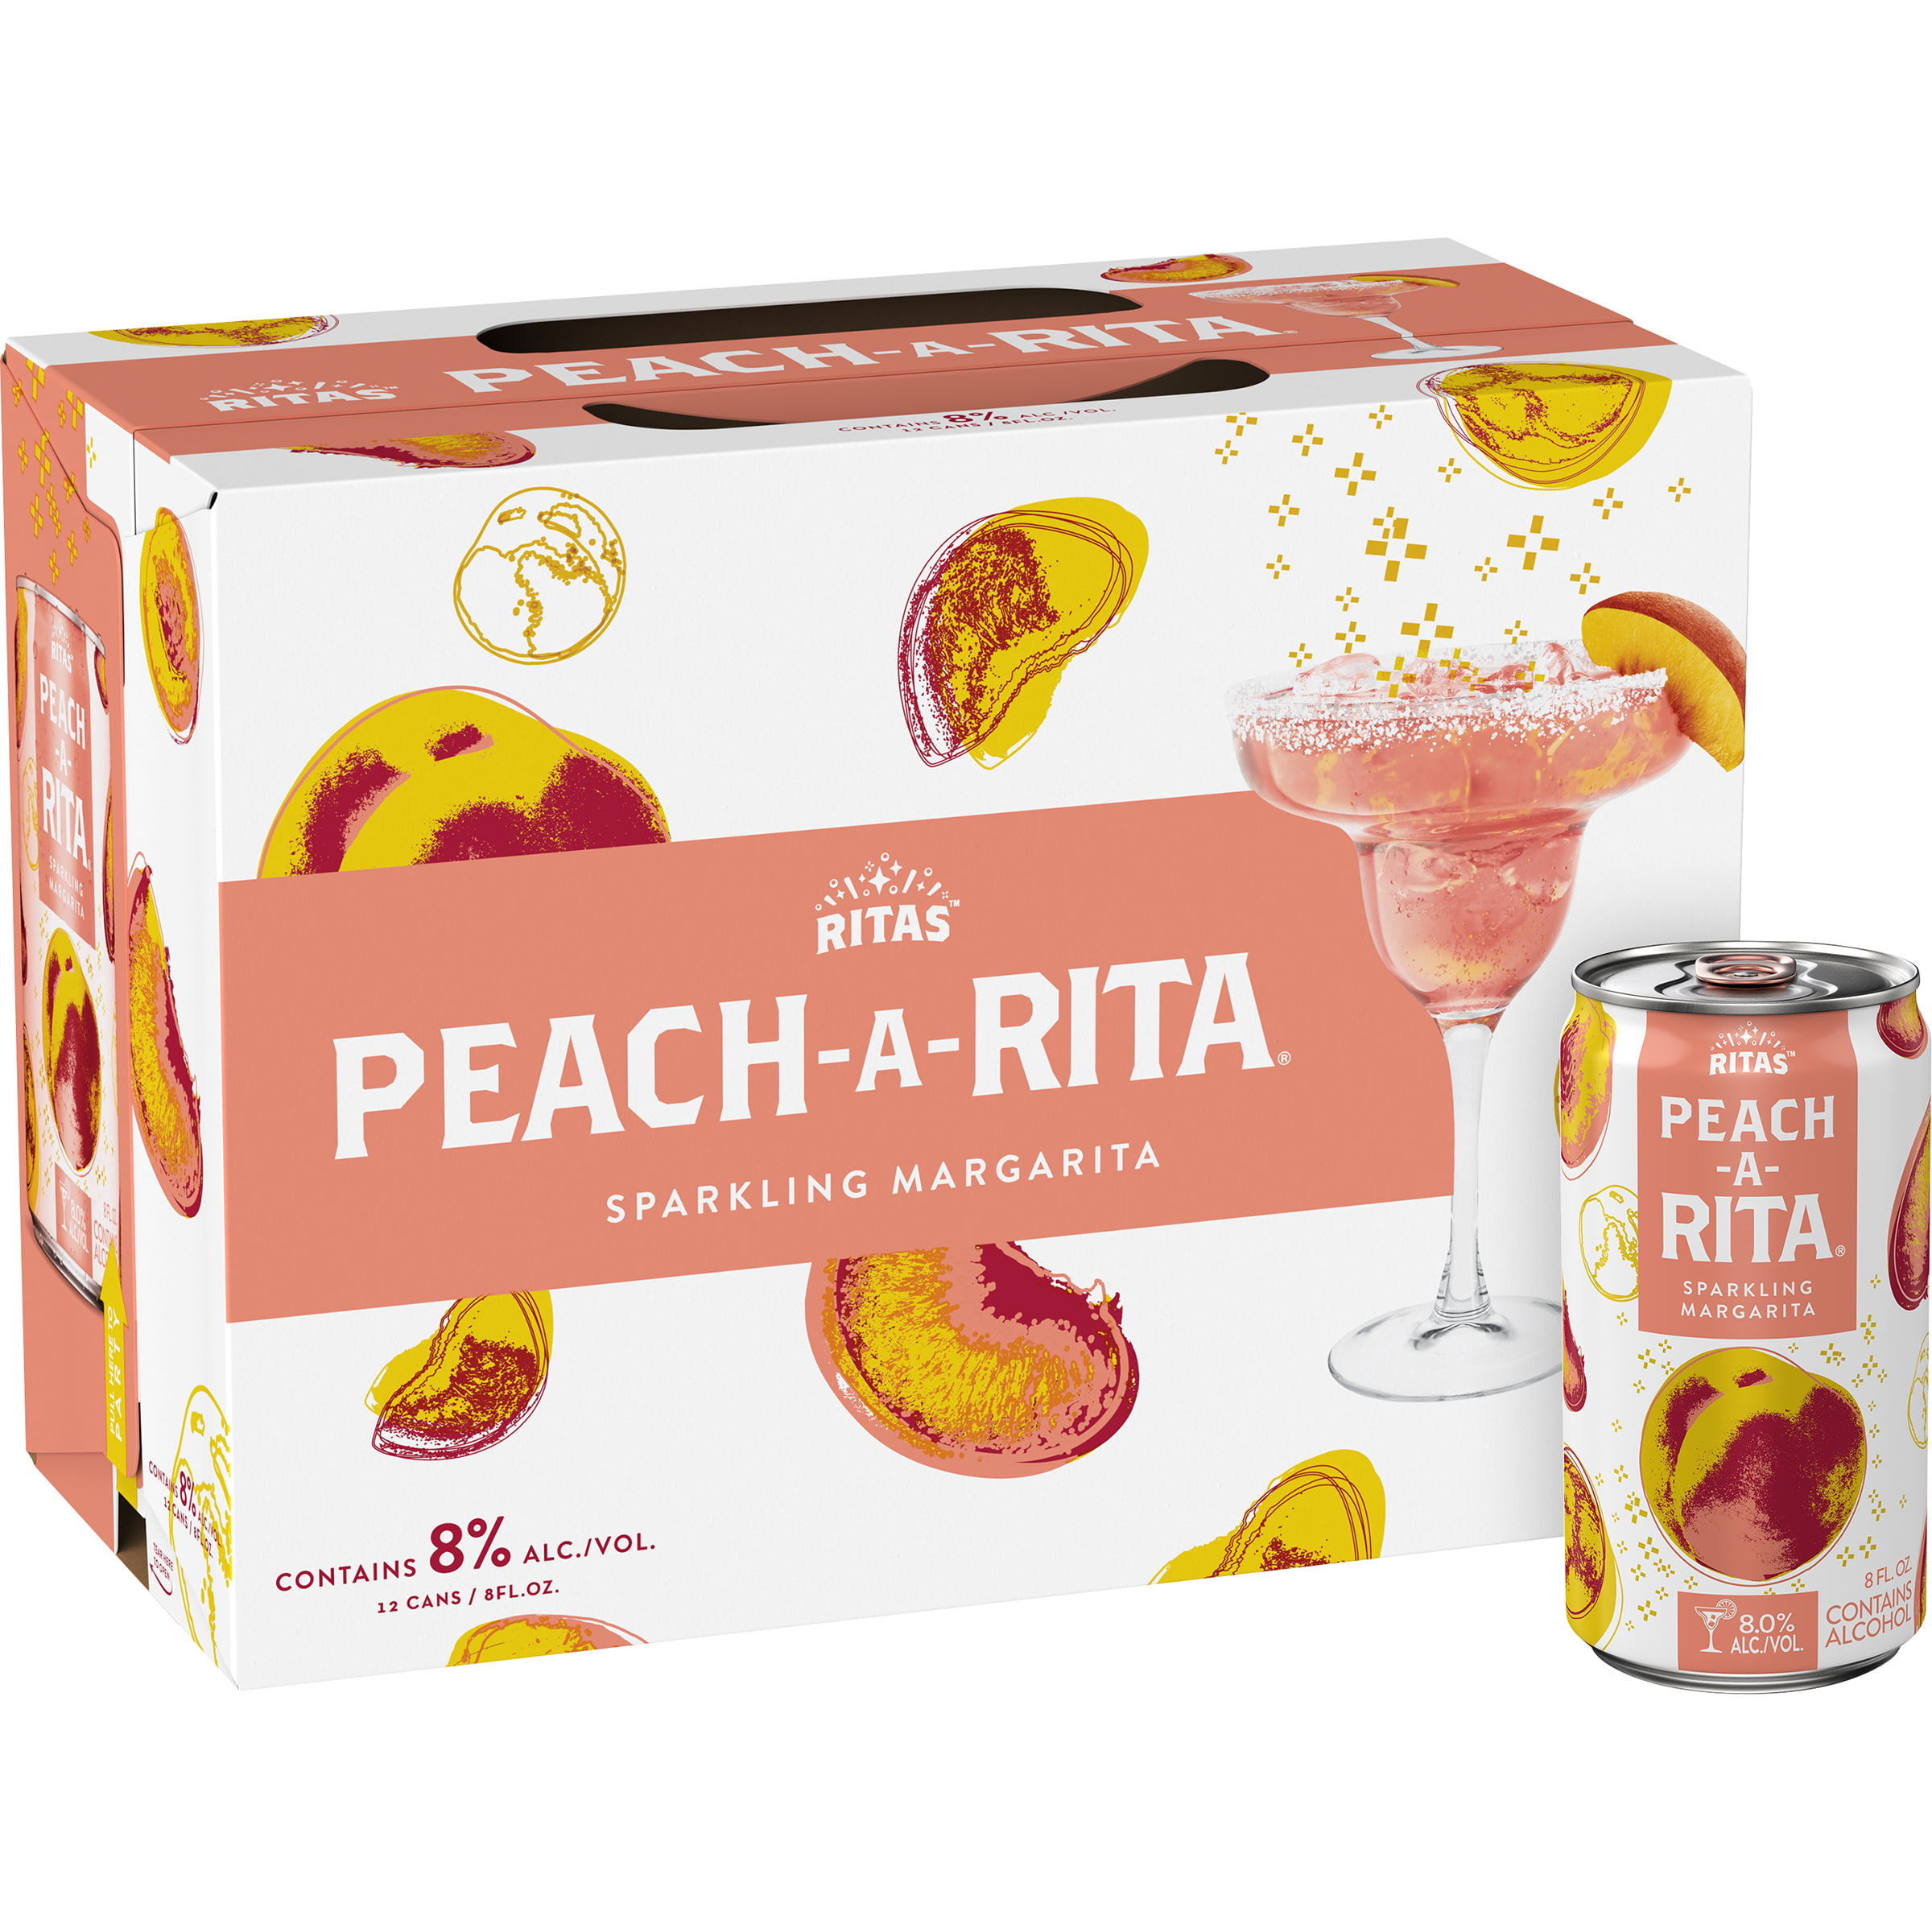 Ritas Peach A Rita Peach Sparkling Margarita Pack Fl Oz Cans